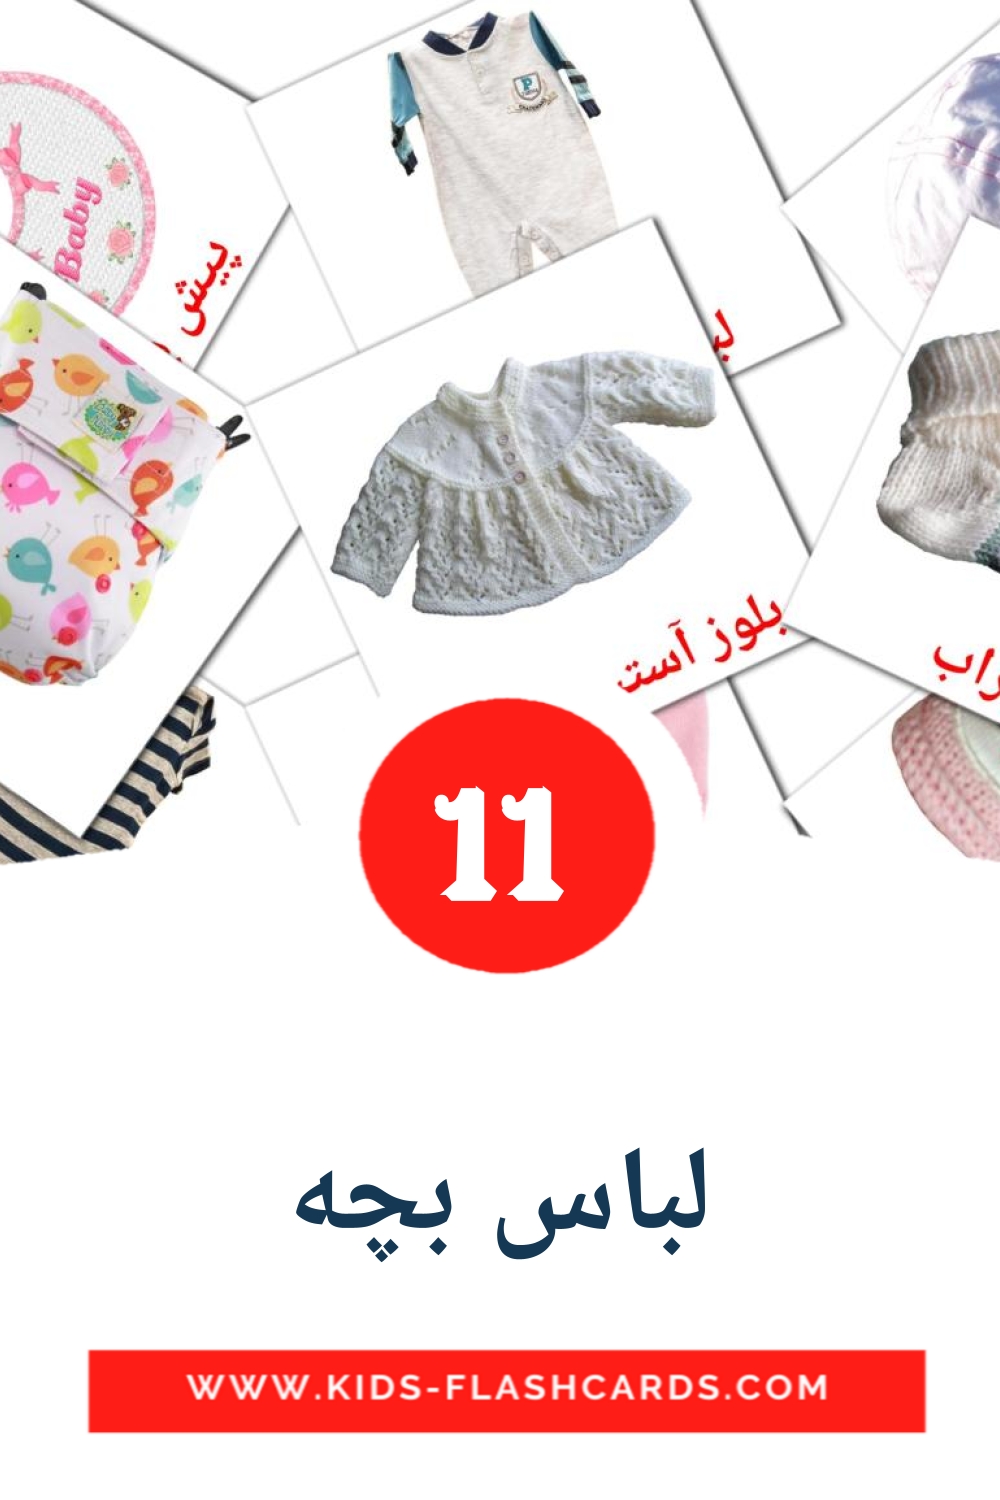 11 Cartões com Imagens de لباس بچه para Jardim de Infância em persa